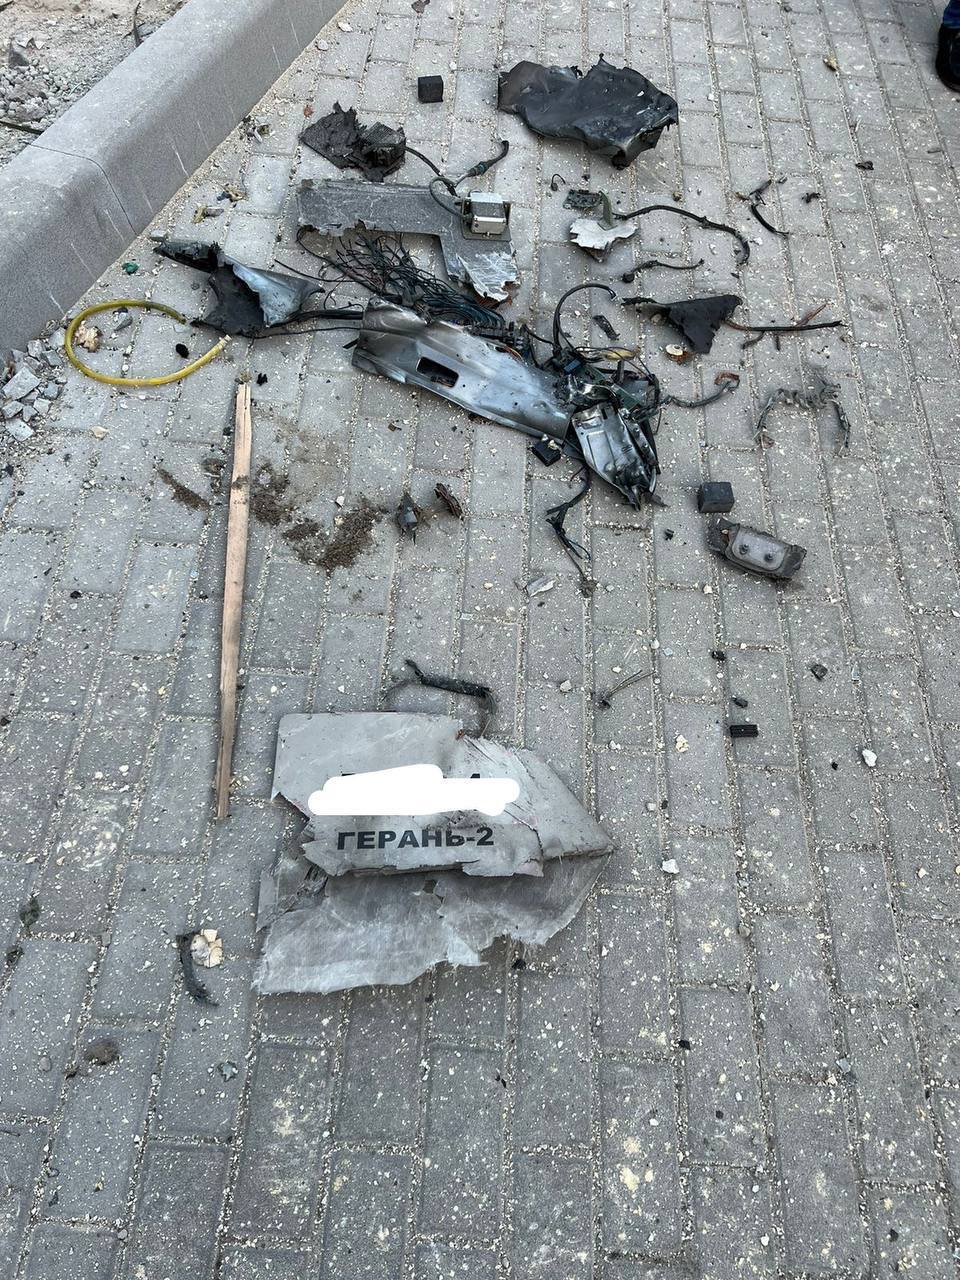 Киев утром атаковали дроны-камикадзе, прогремела серия взрывов: людей спасали из-под завалов. Фото и видео